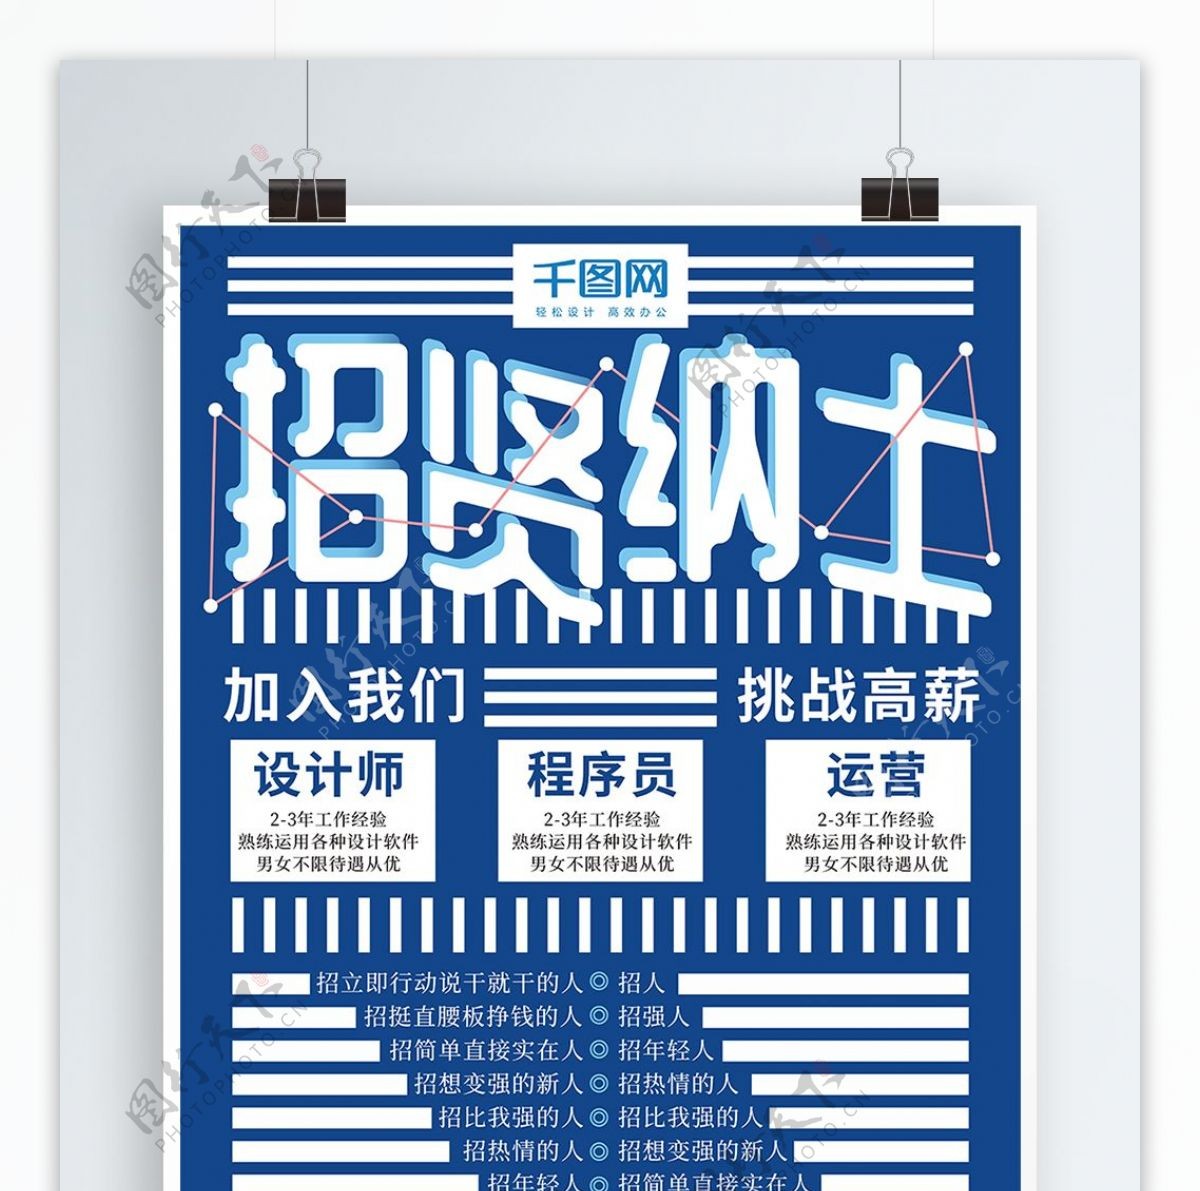 简约招贤纳士招聘蓝色实验式版式海报